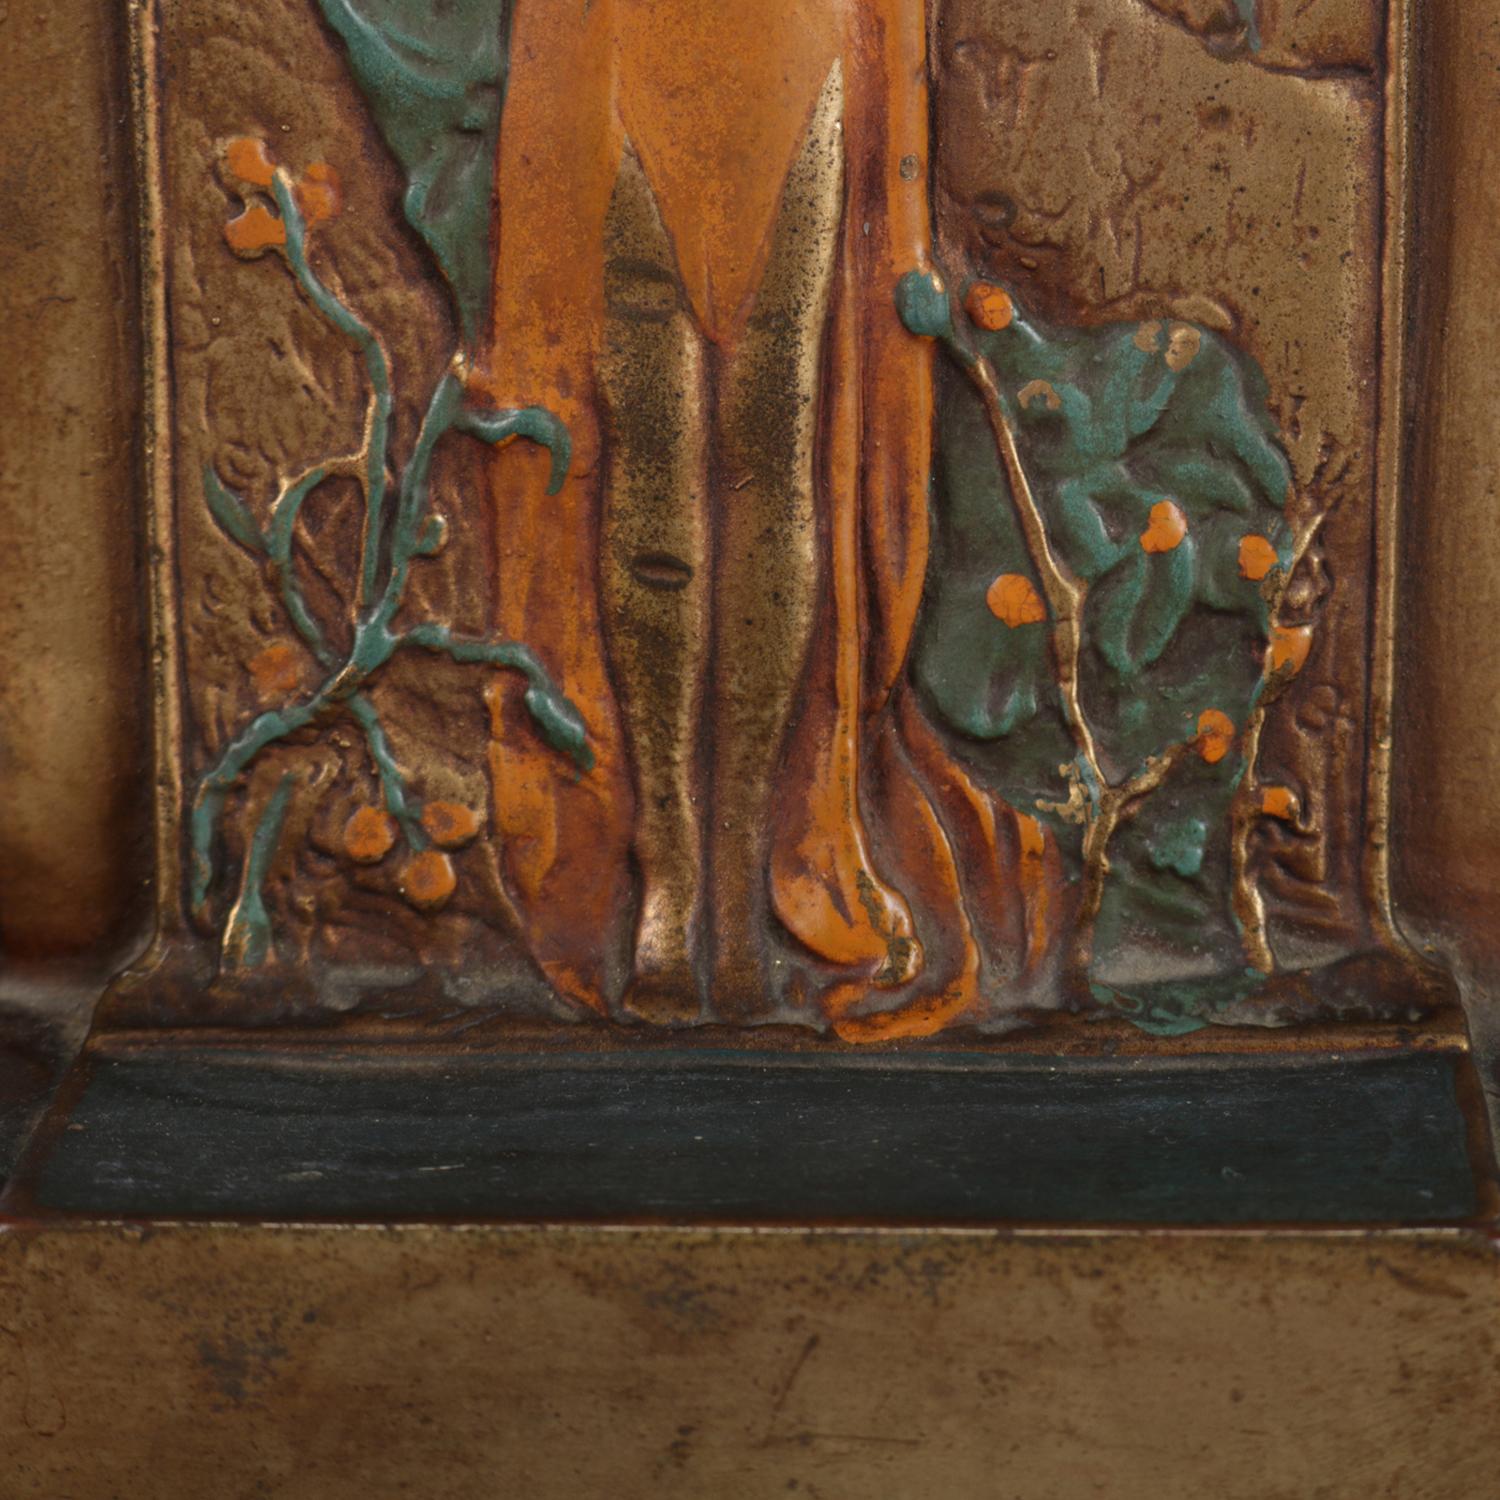 American Art Nouveau Polychromed Bronzed Bookends Stylized After Klimt's 